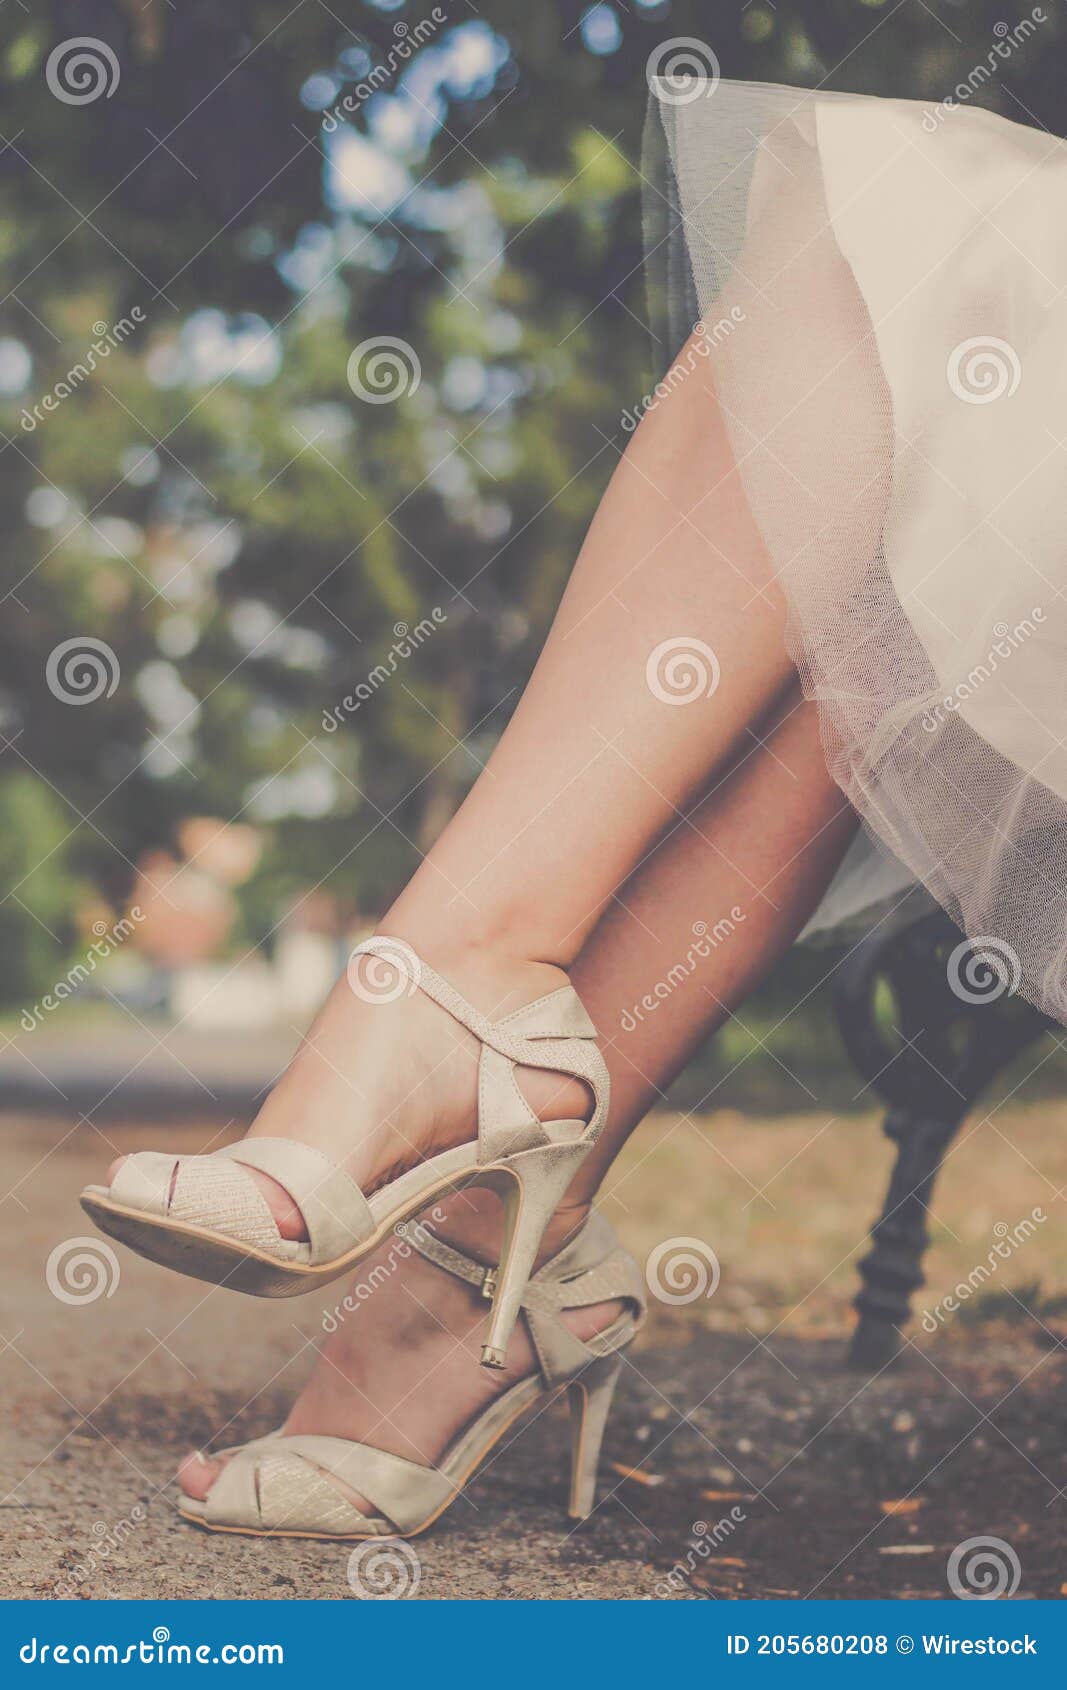 Novia Con Vestido De Blanco Y Con Sandalias De Alto Sentada En Un Banco De Un Parque Foto de archivo - Imagen de sandalia, boda: 205680208